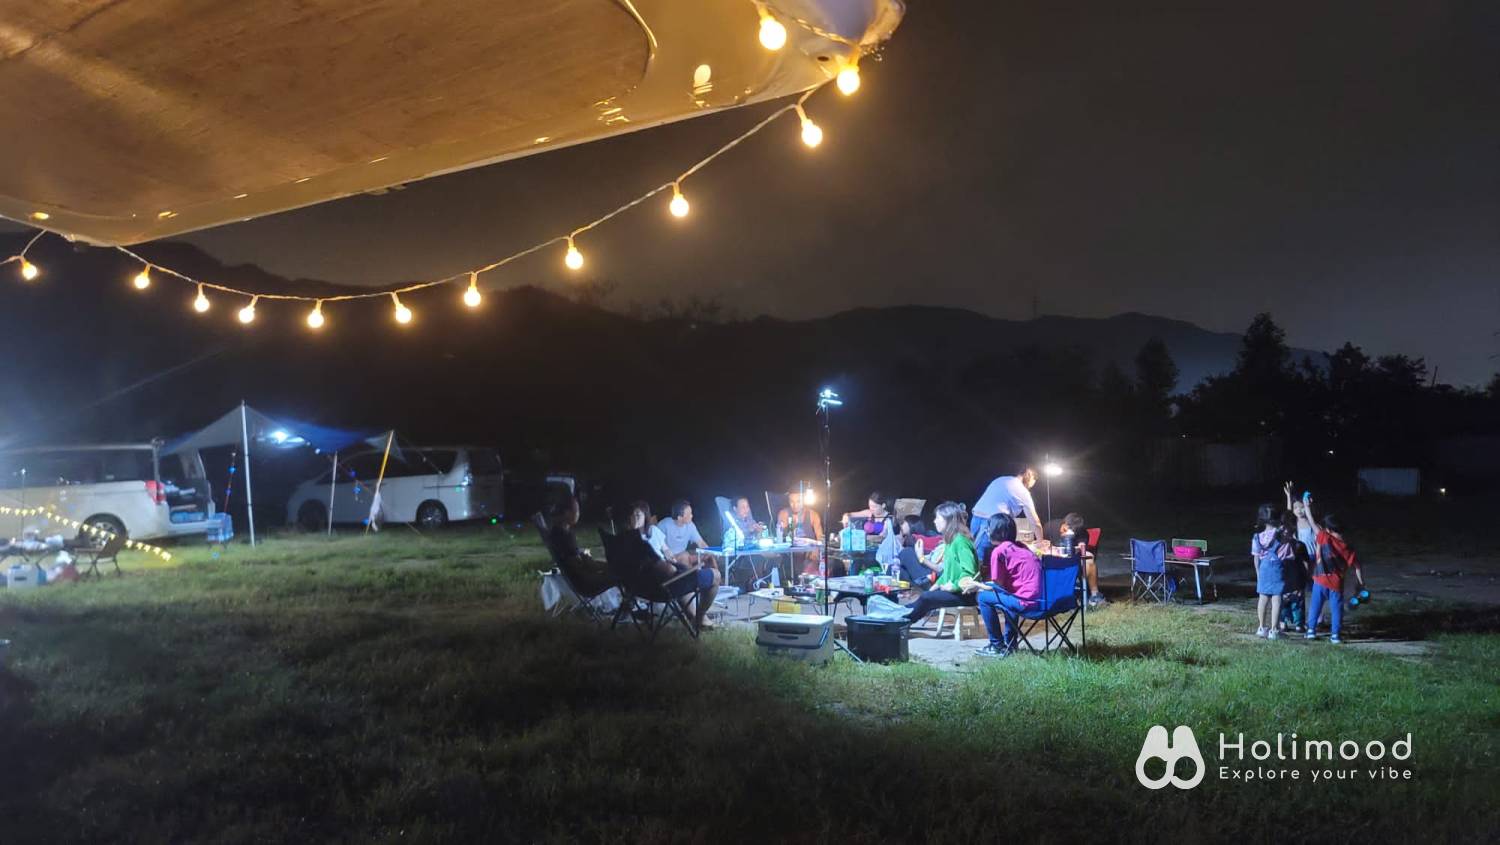 綠行鳥 - 大棠Car Camping + Glamping & 紅葉營地 【Starry Camping Night】 Bring Your Own Tent 1